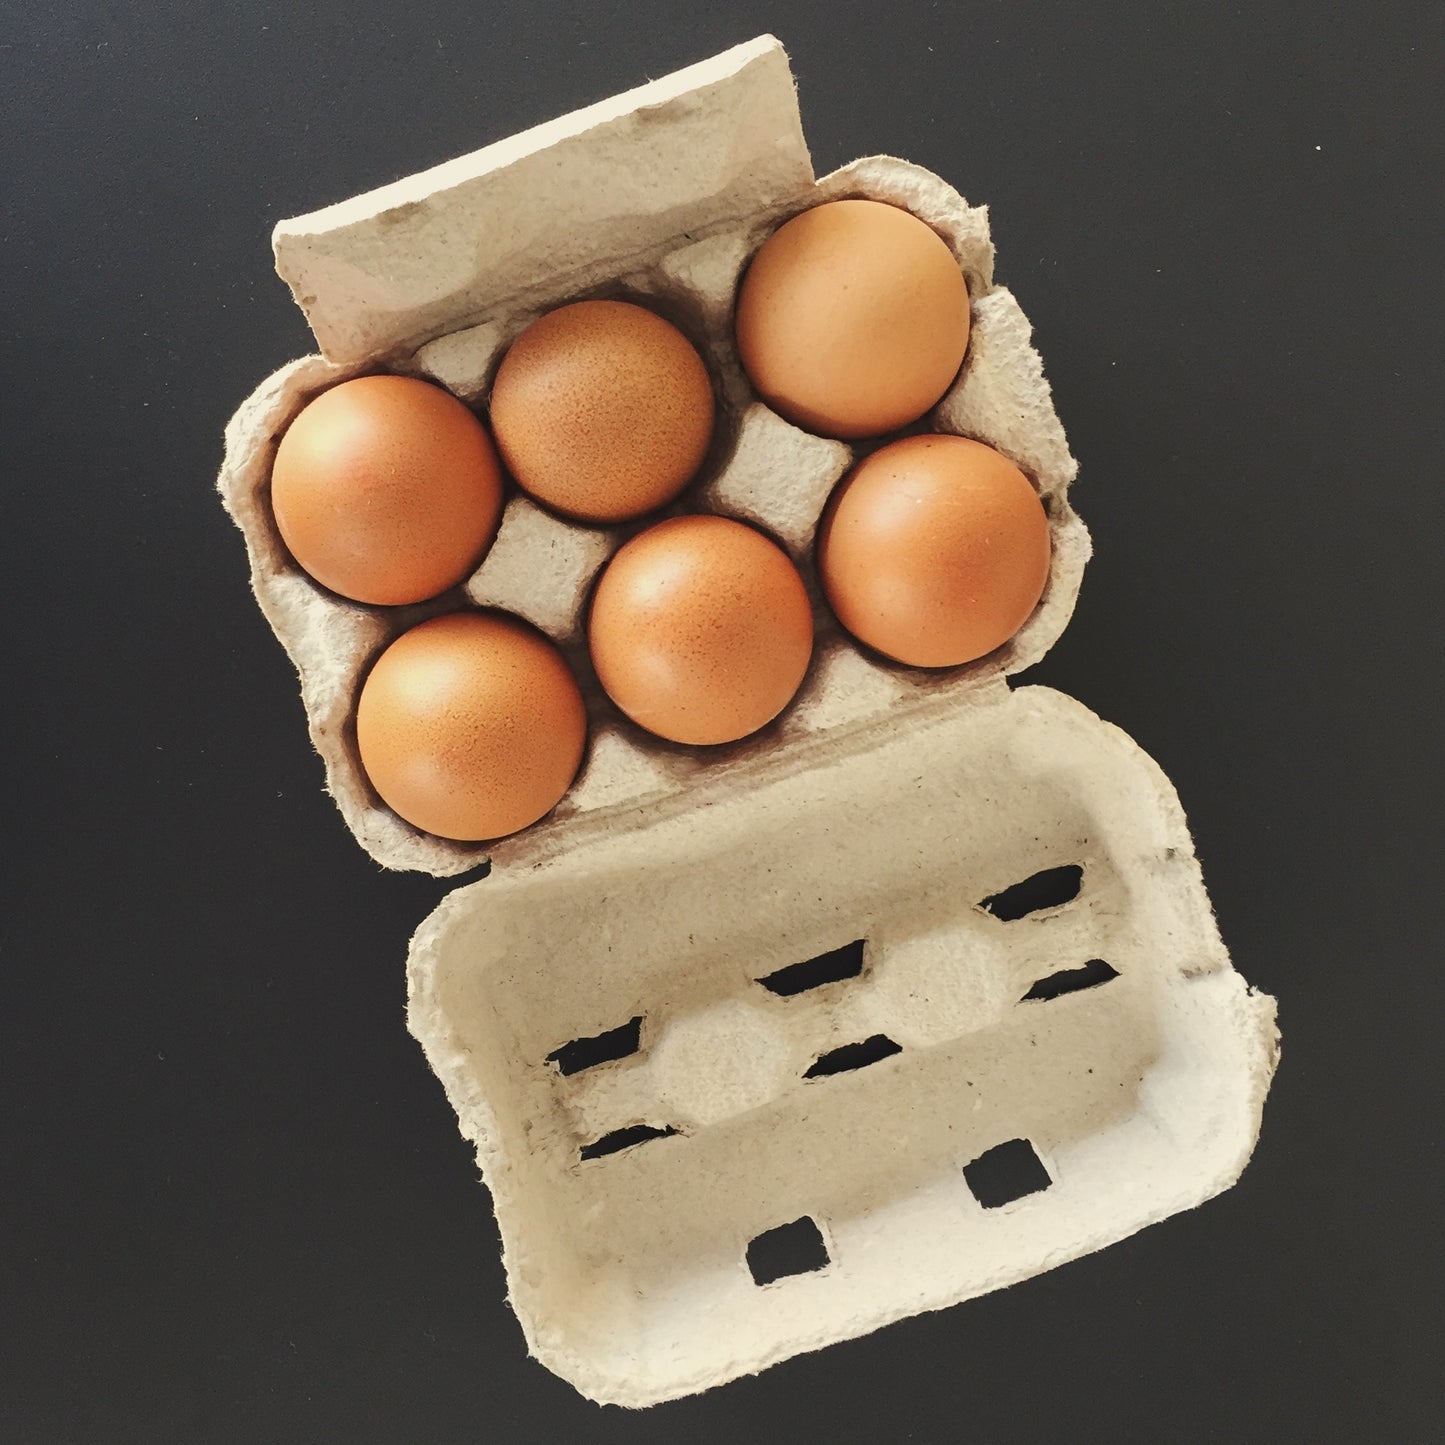 黒富士農場 リアルオーガニック卵 6個入り 有機JAS認定 平飼放牧鶏卵